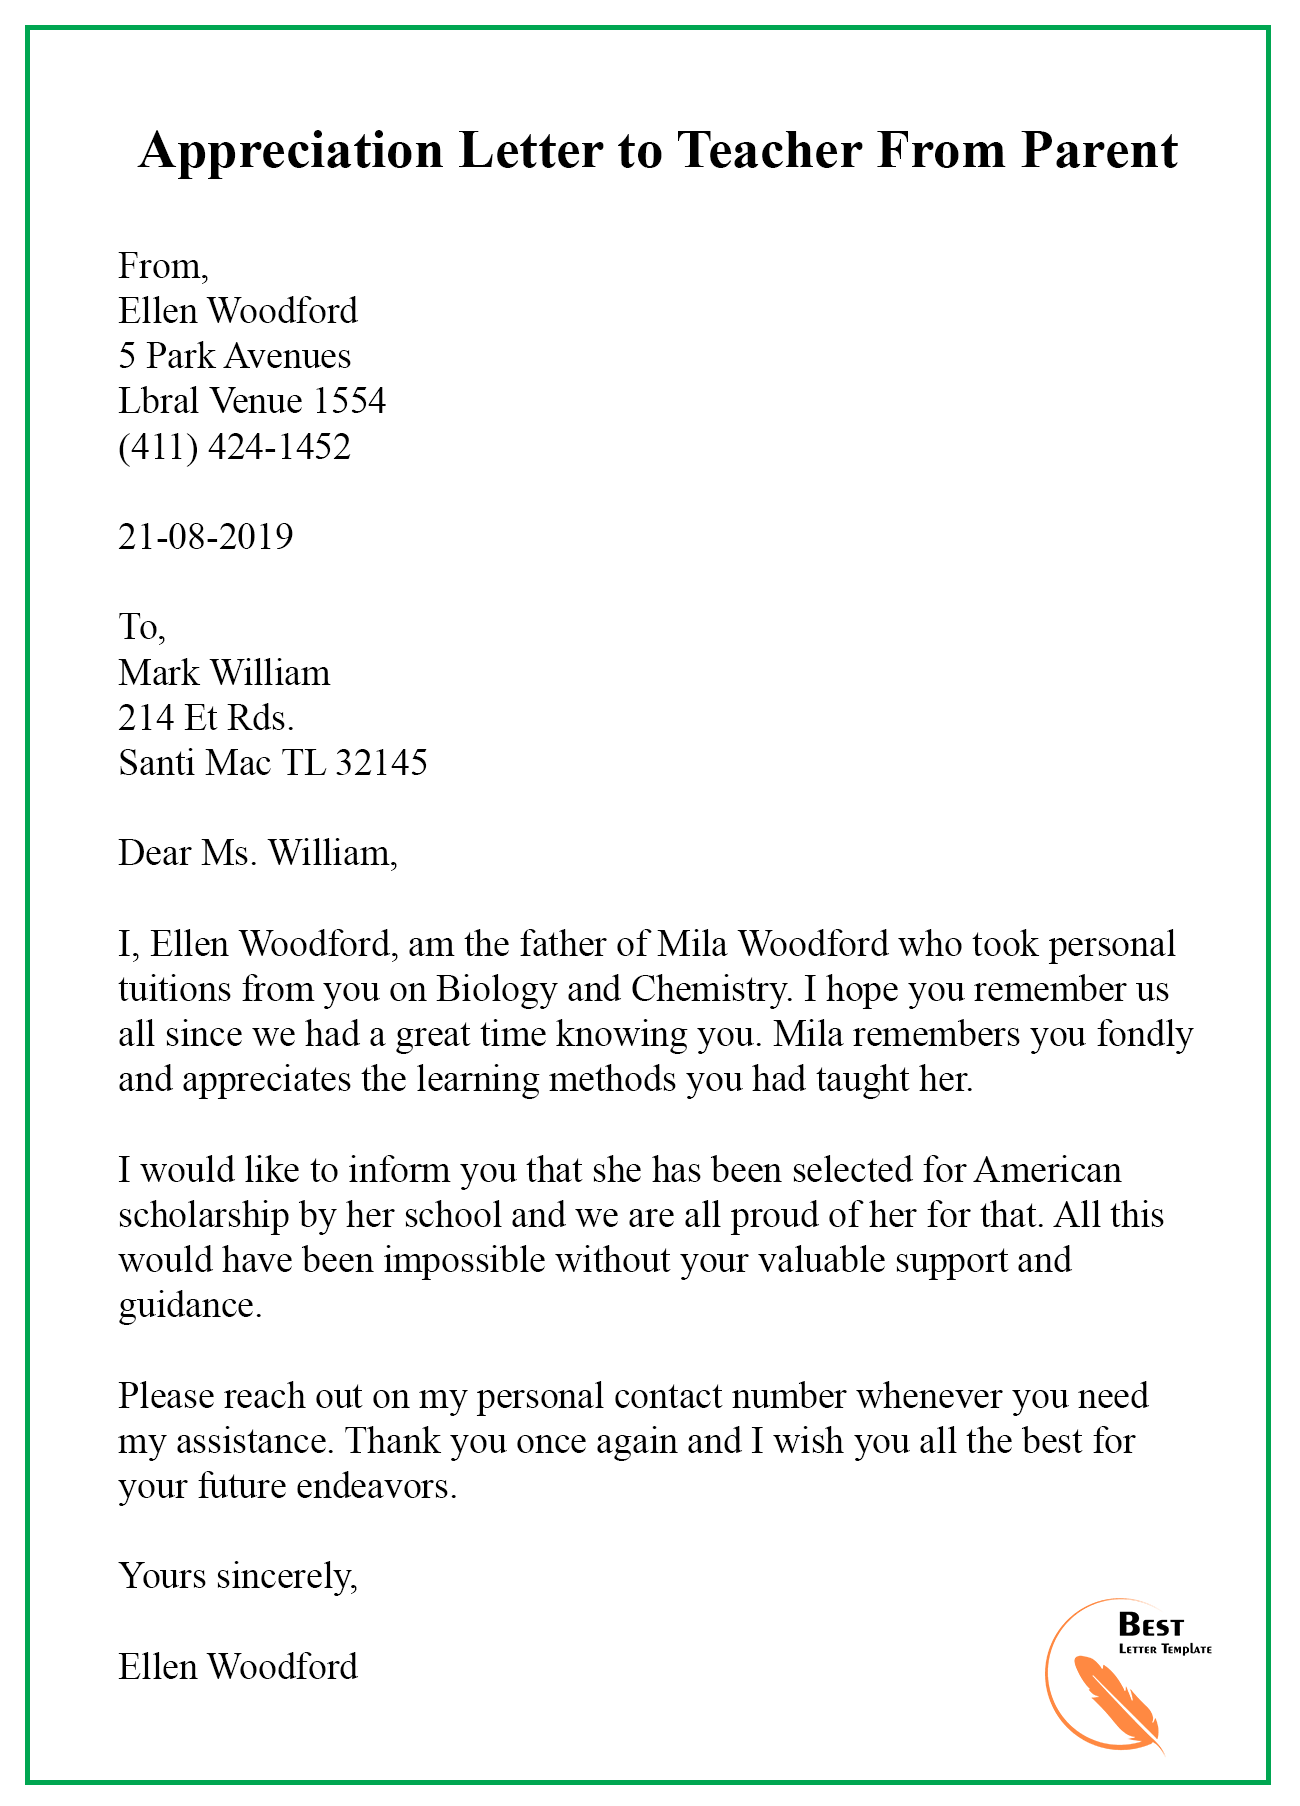 Format Of Appreciation Letter